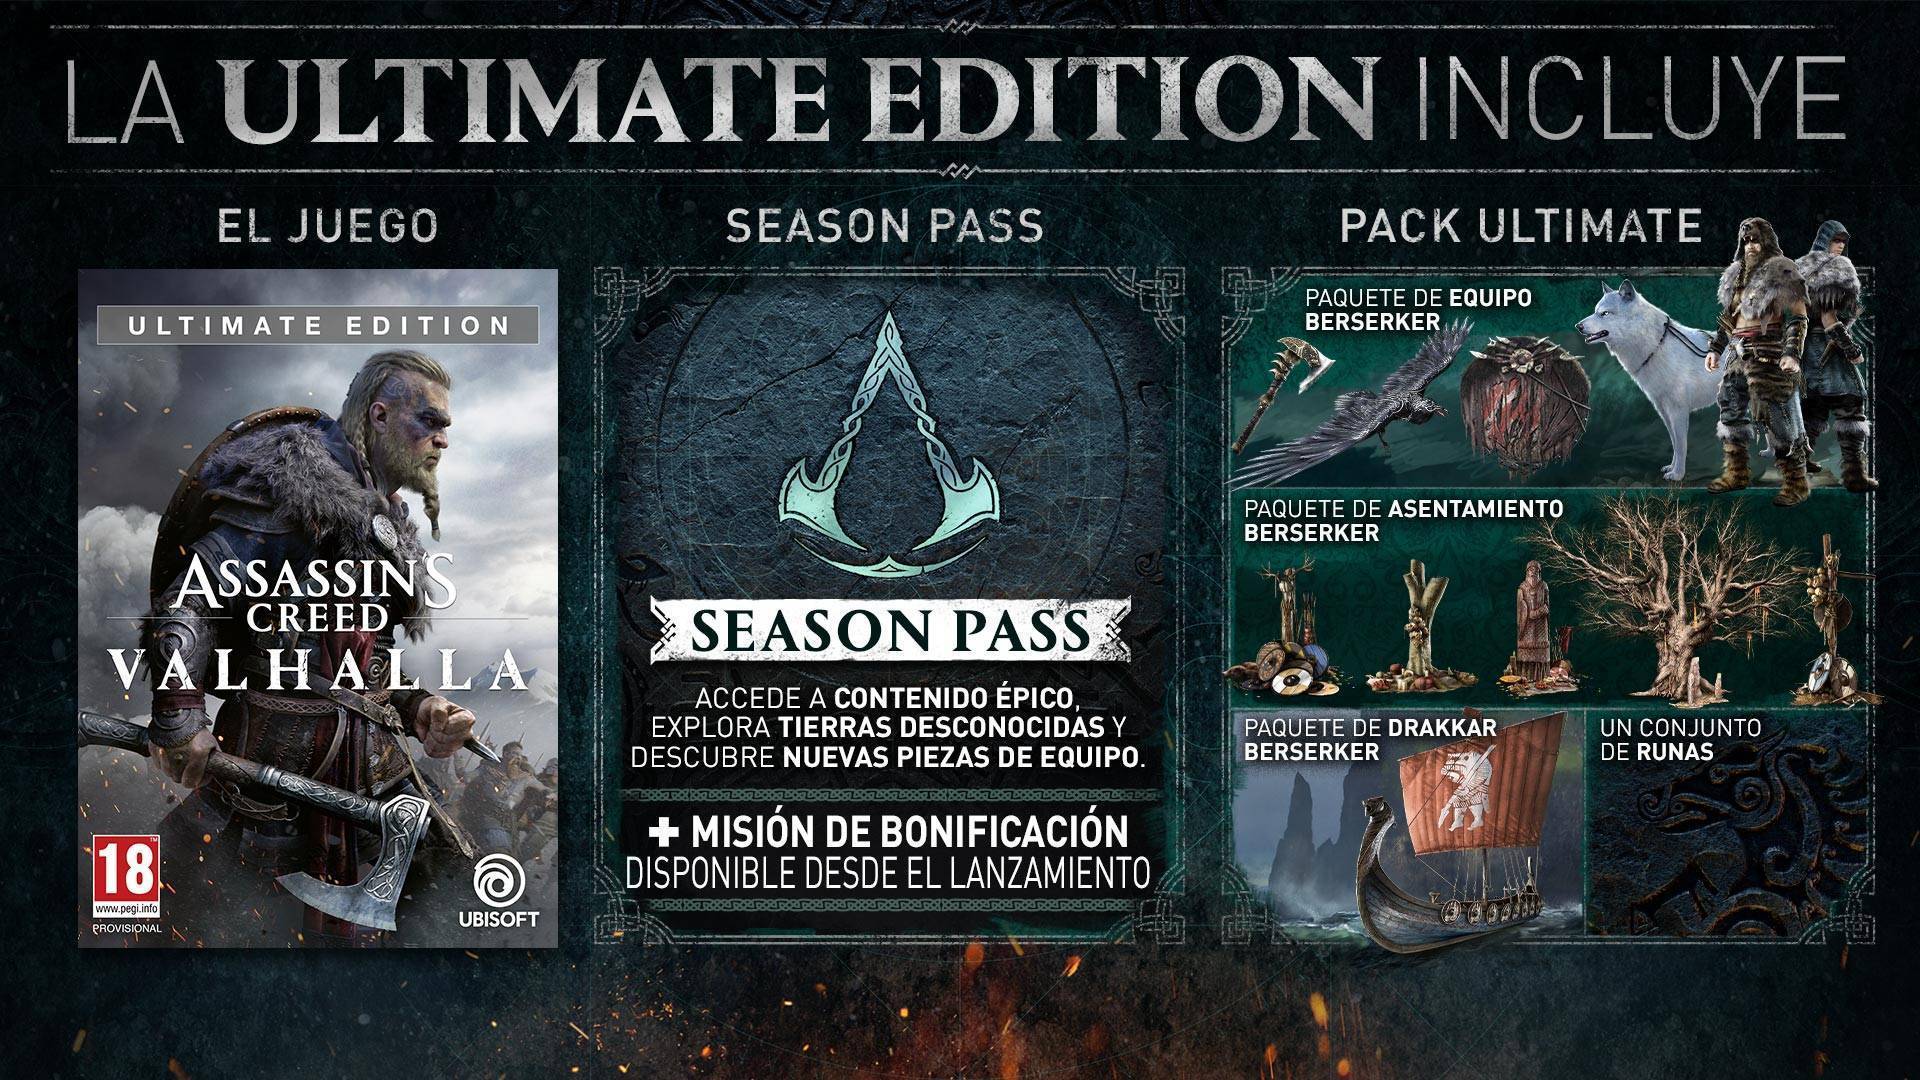  Assassin's Creed Valhalla Season Pass